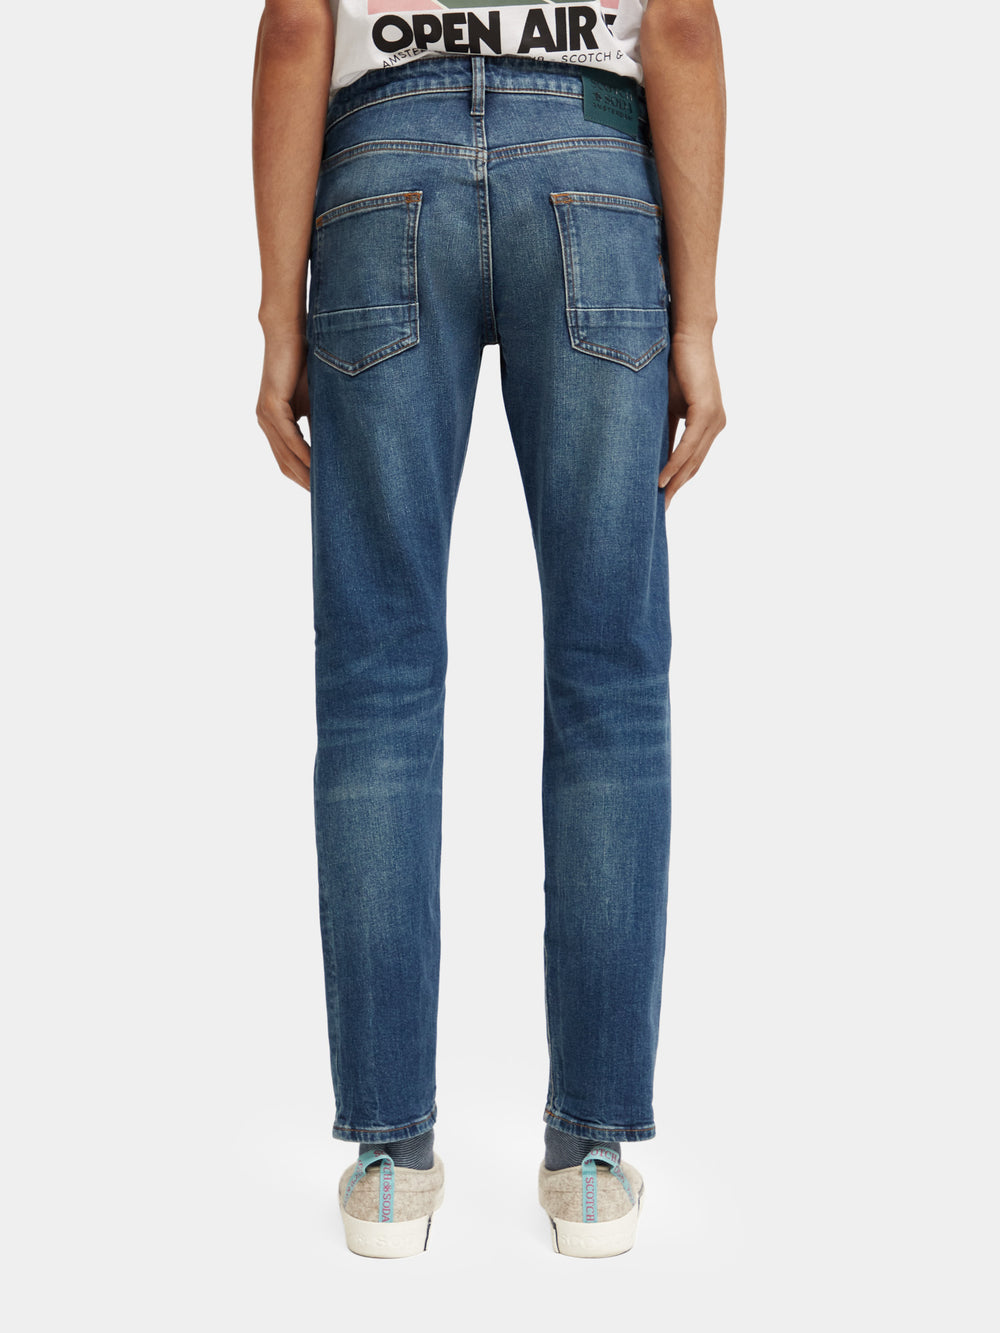 Ralston slim jeans - New Starter - Scotch & Soda AU